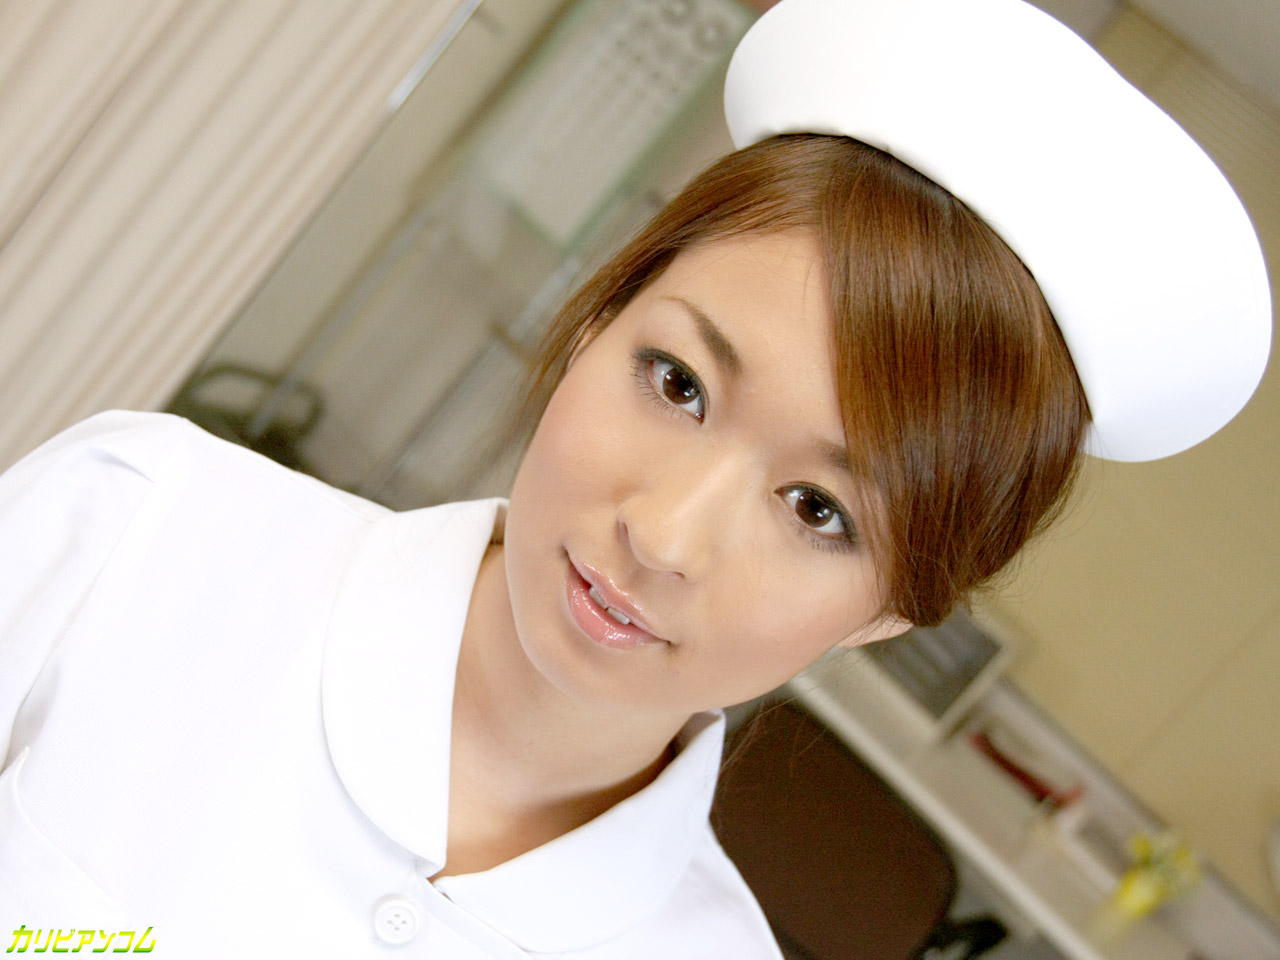 Cute Japanese nurse Risa Misakimasturbates at work before getting fucked porno fotoğrafı #426255456 | Caribbeancom Pics, Risa Misaki, Nurse, mobil porno